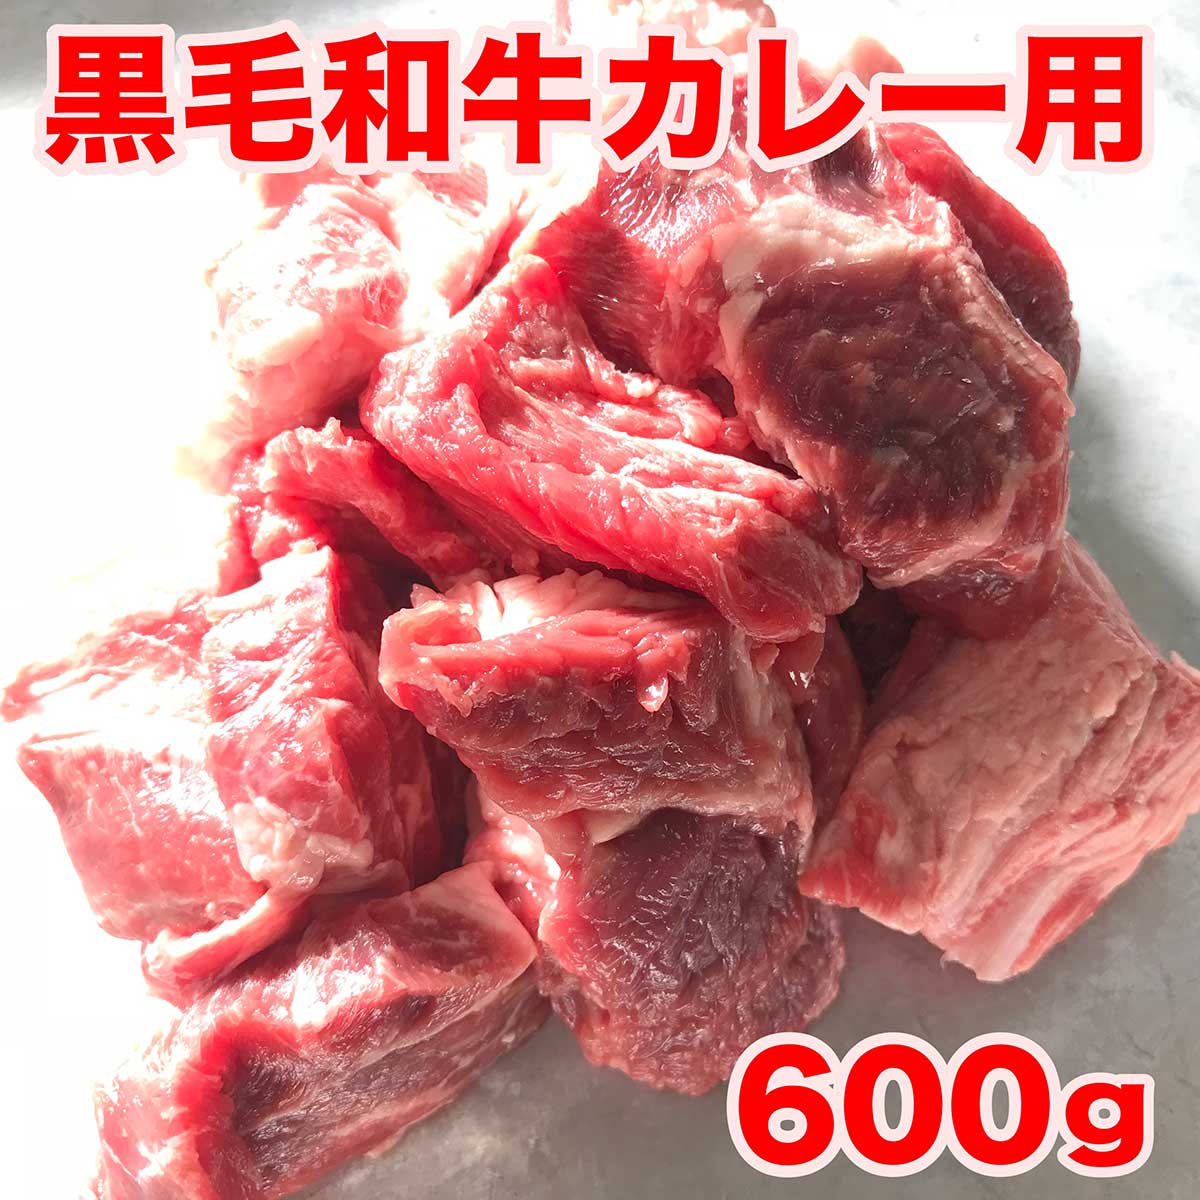 カレー ビーフシチュー用 煮込み 用 肉カット 300g×2パック ギフト 牛肉 松阪牛やまとの煮込み素材